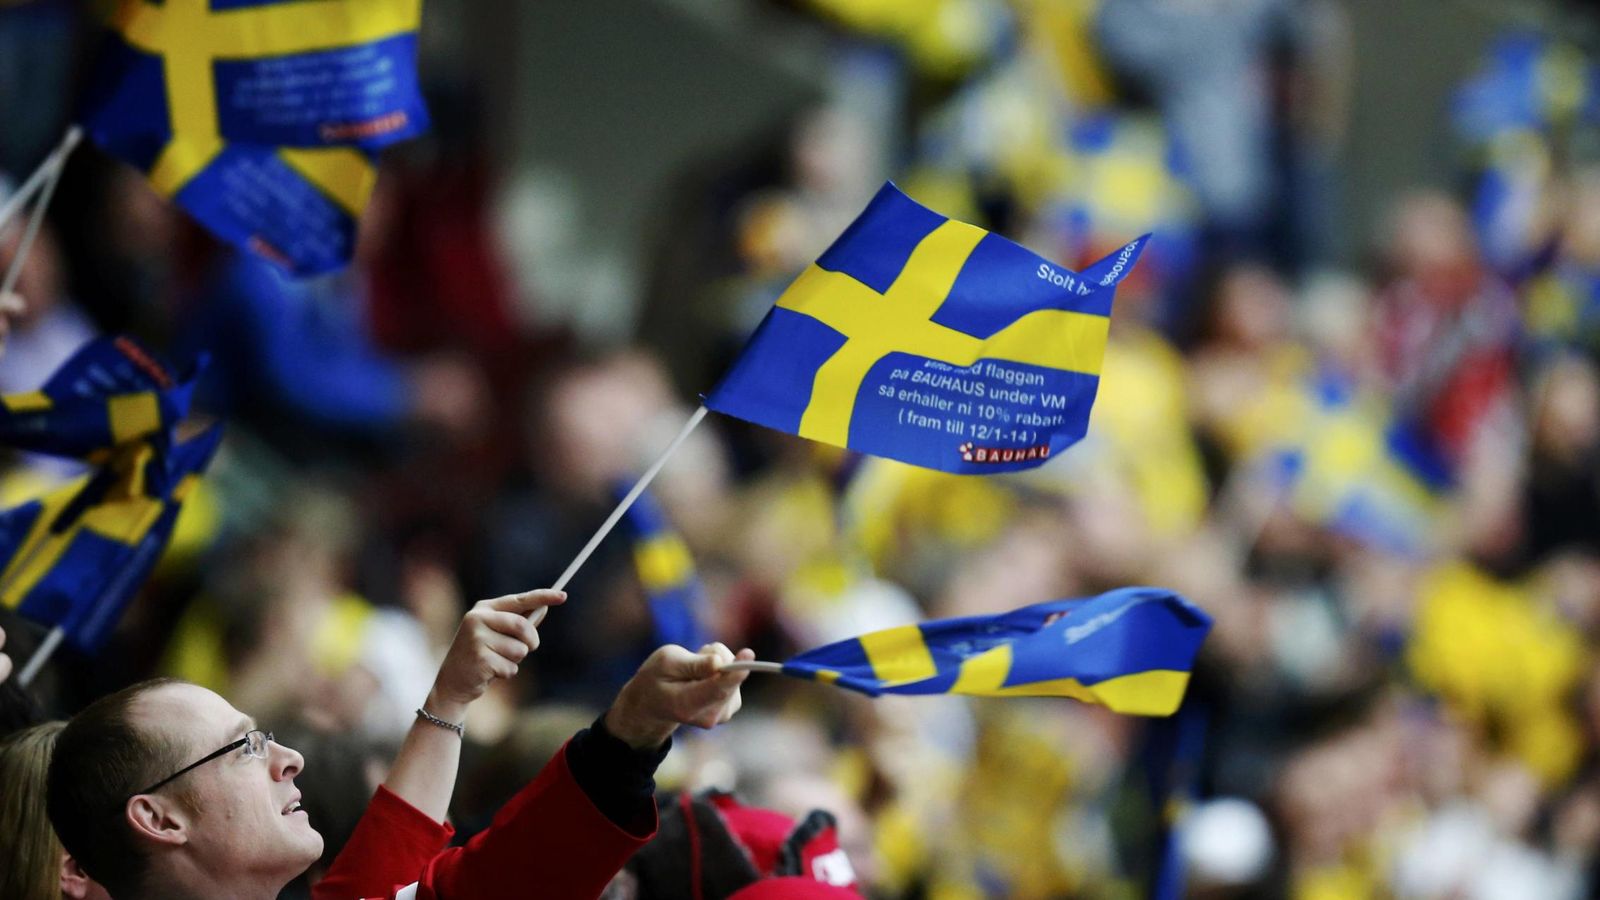 Foto: Un aficionado ondea una bandera sueca durante un partido de hockey hielo. (Reuters)